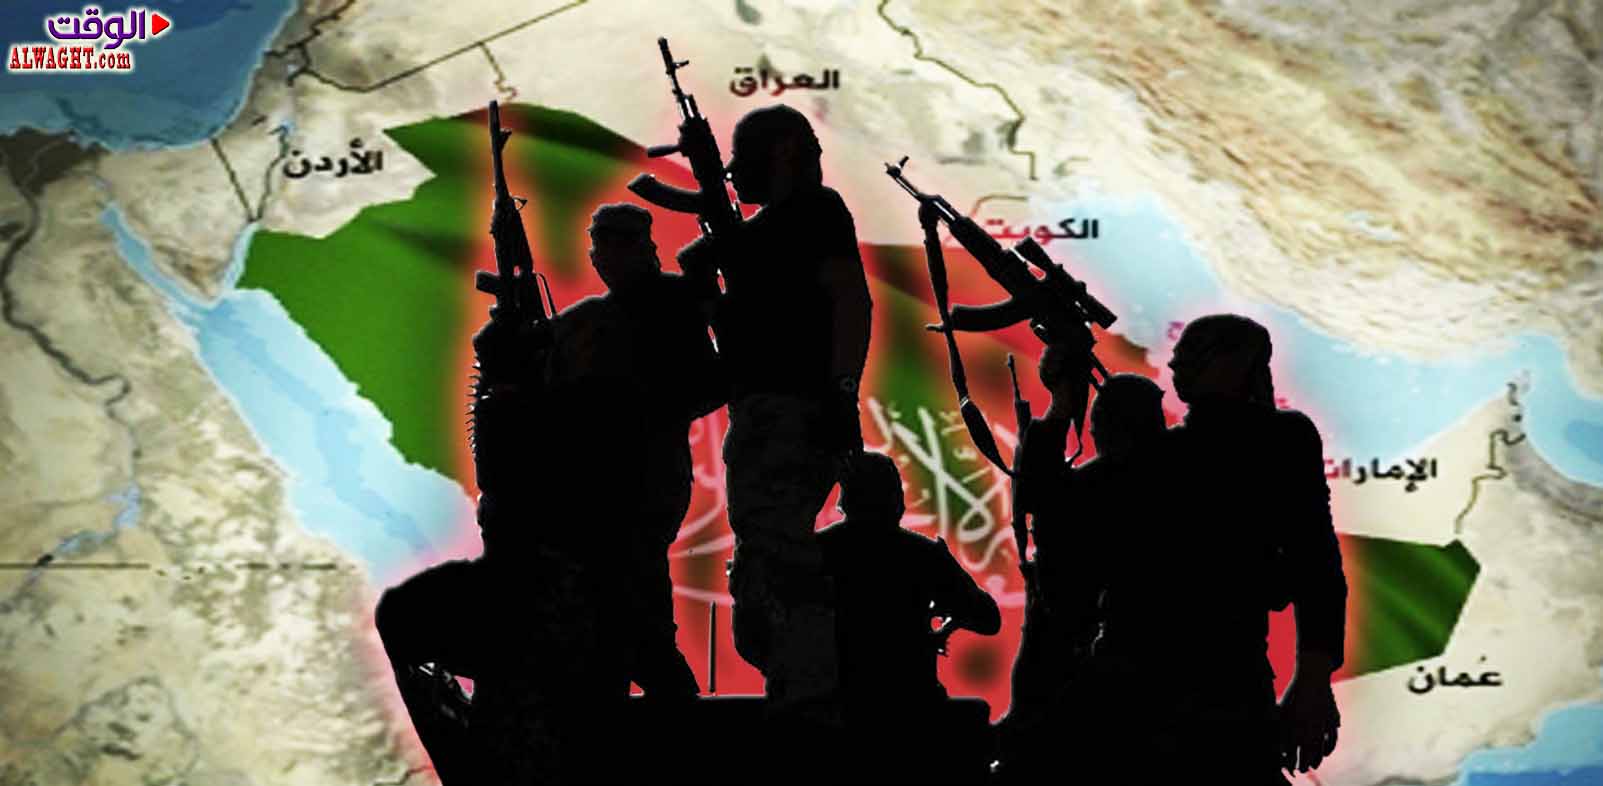 العويد: المخابرات ووسائل الاعلام السعودية تقف وراء ظهور داعش